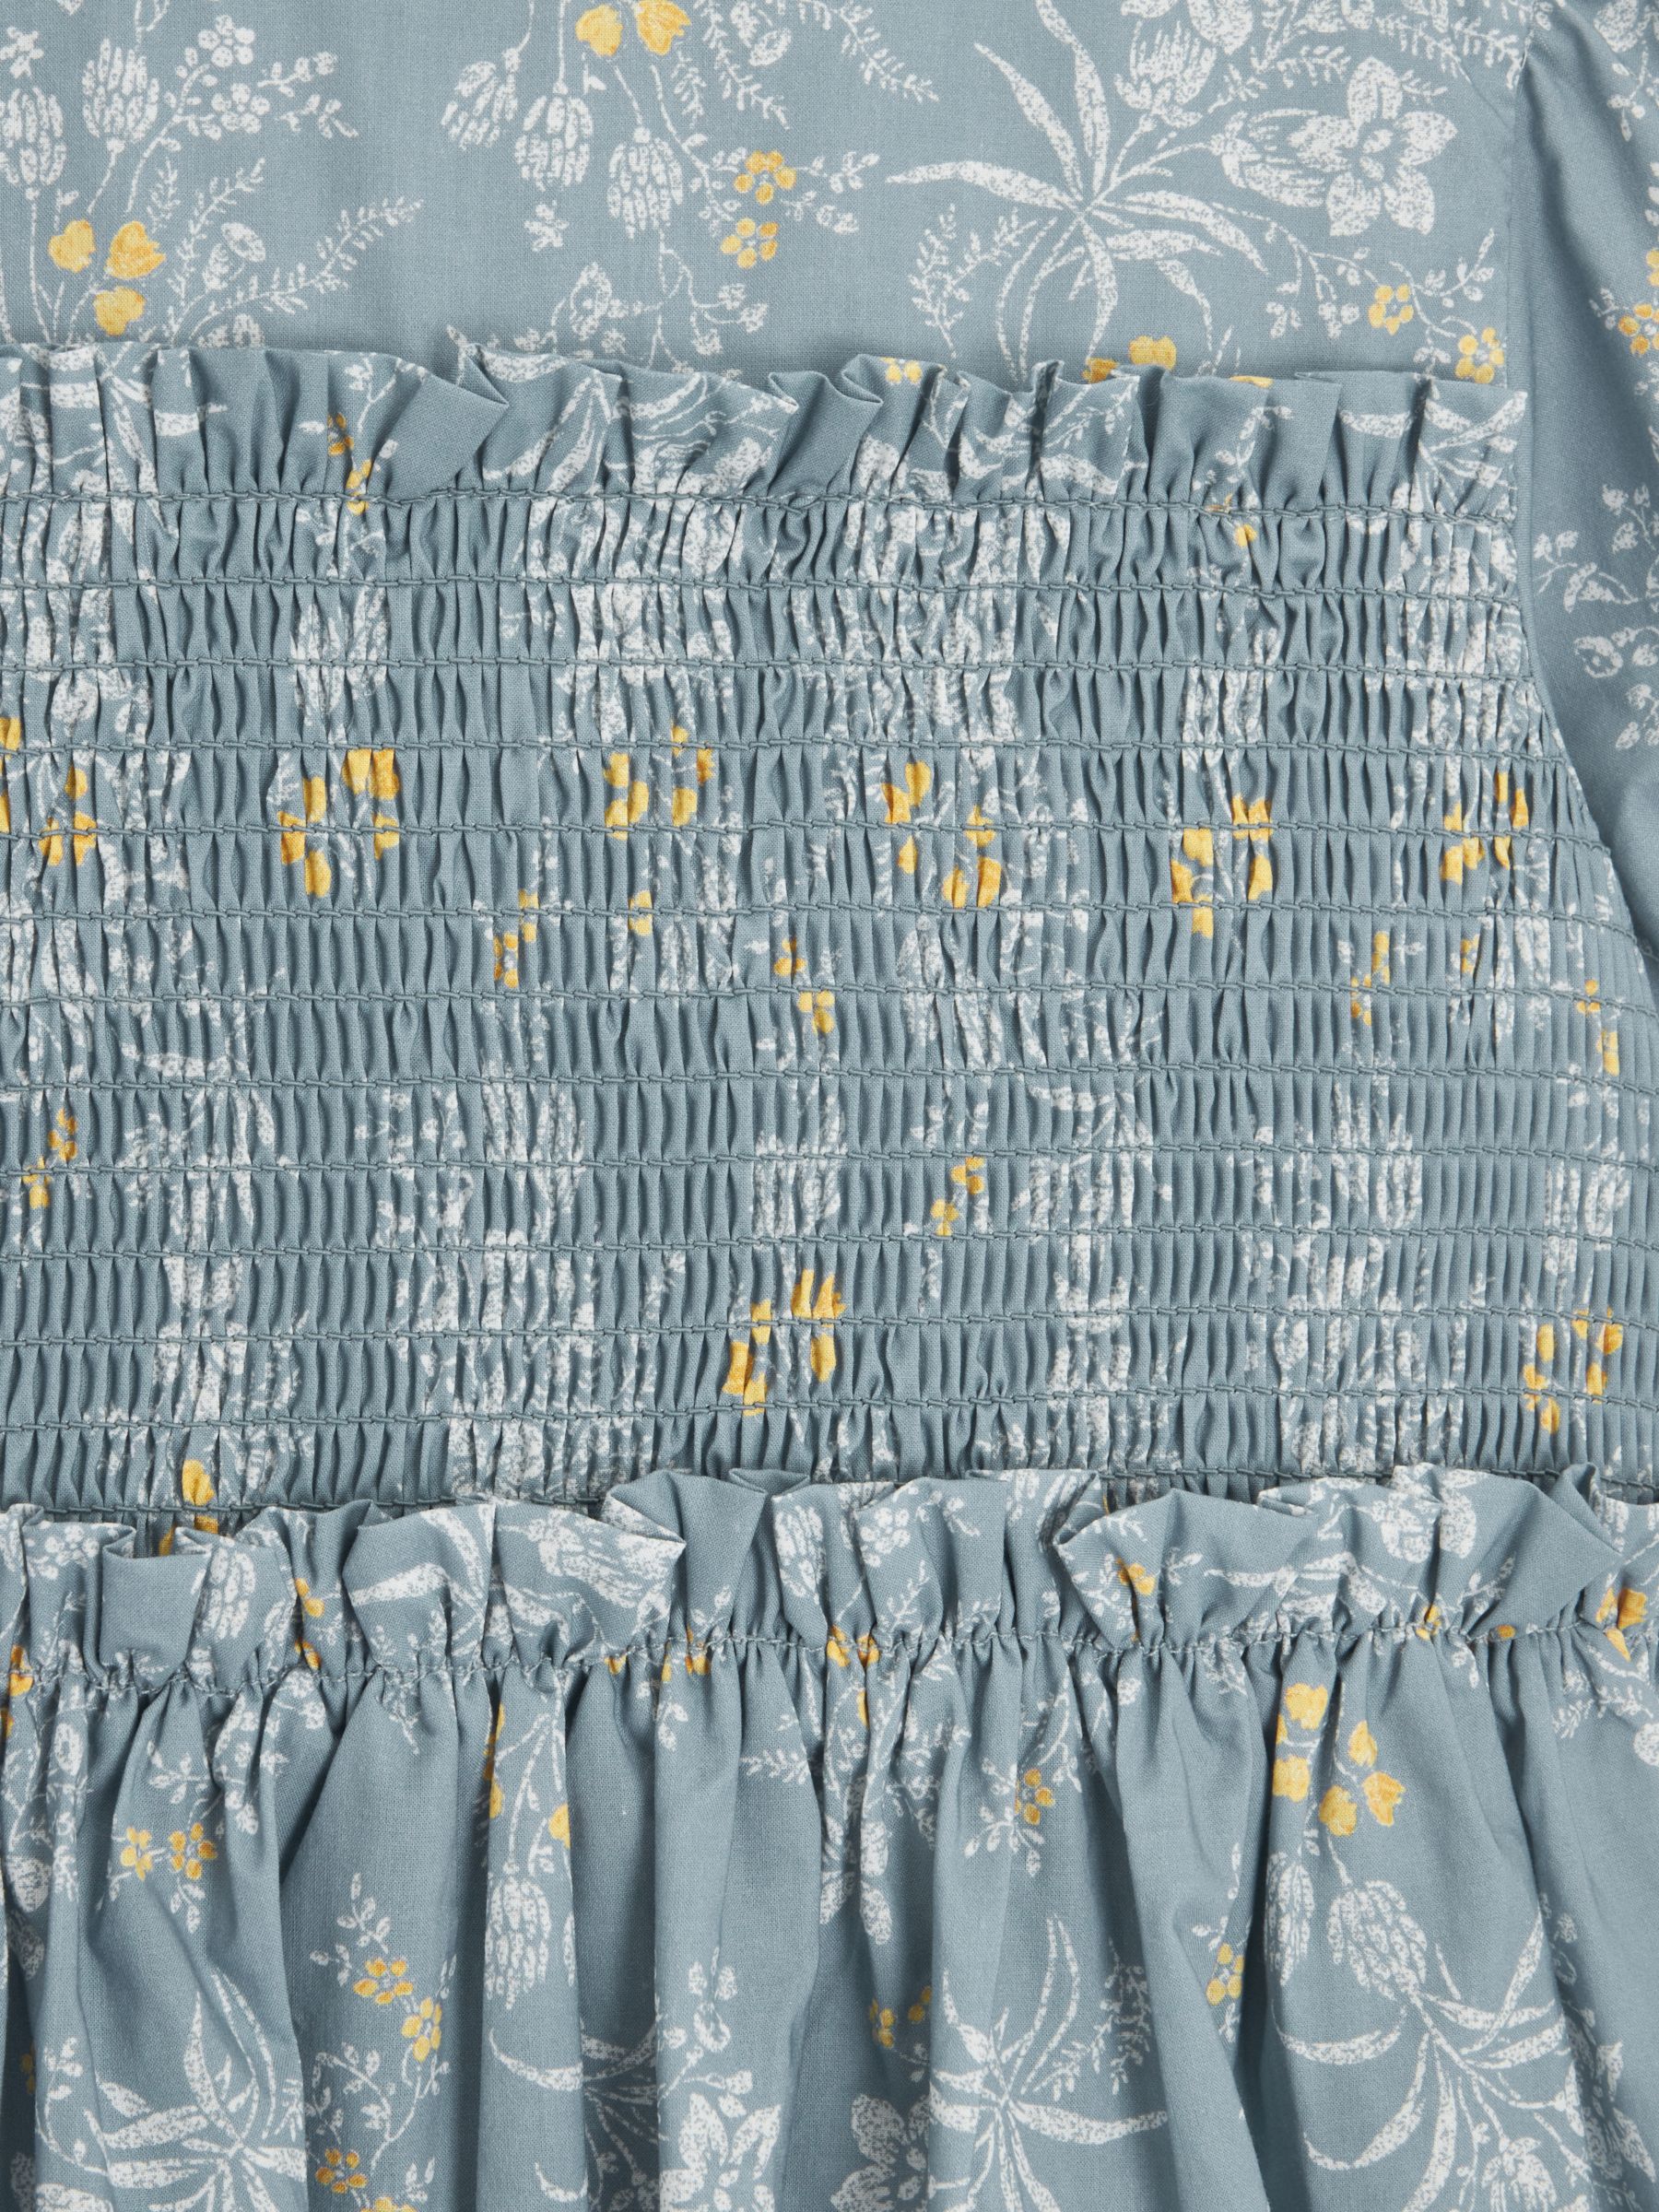 Buy John Lewis Heirloom Collection Kids' Vintage Floral Shirred Dress, Blue Online at johnlewis.com